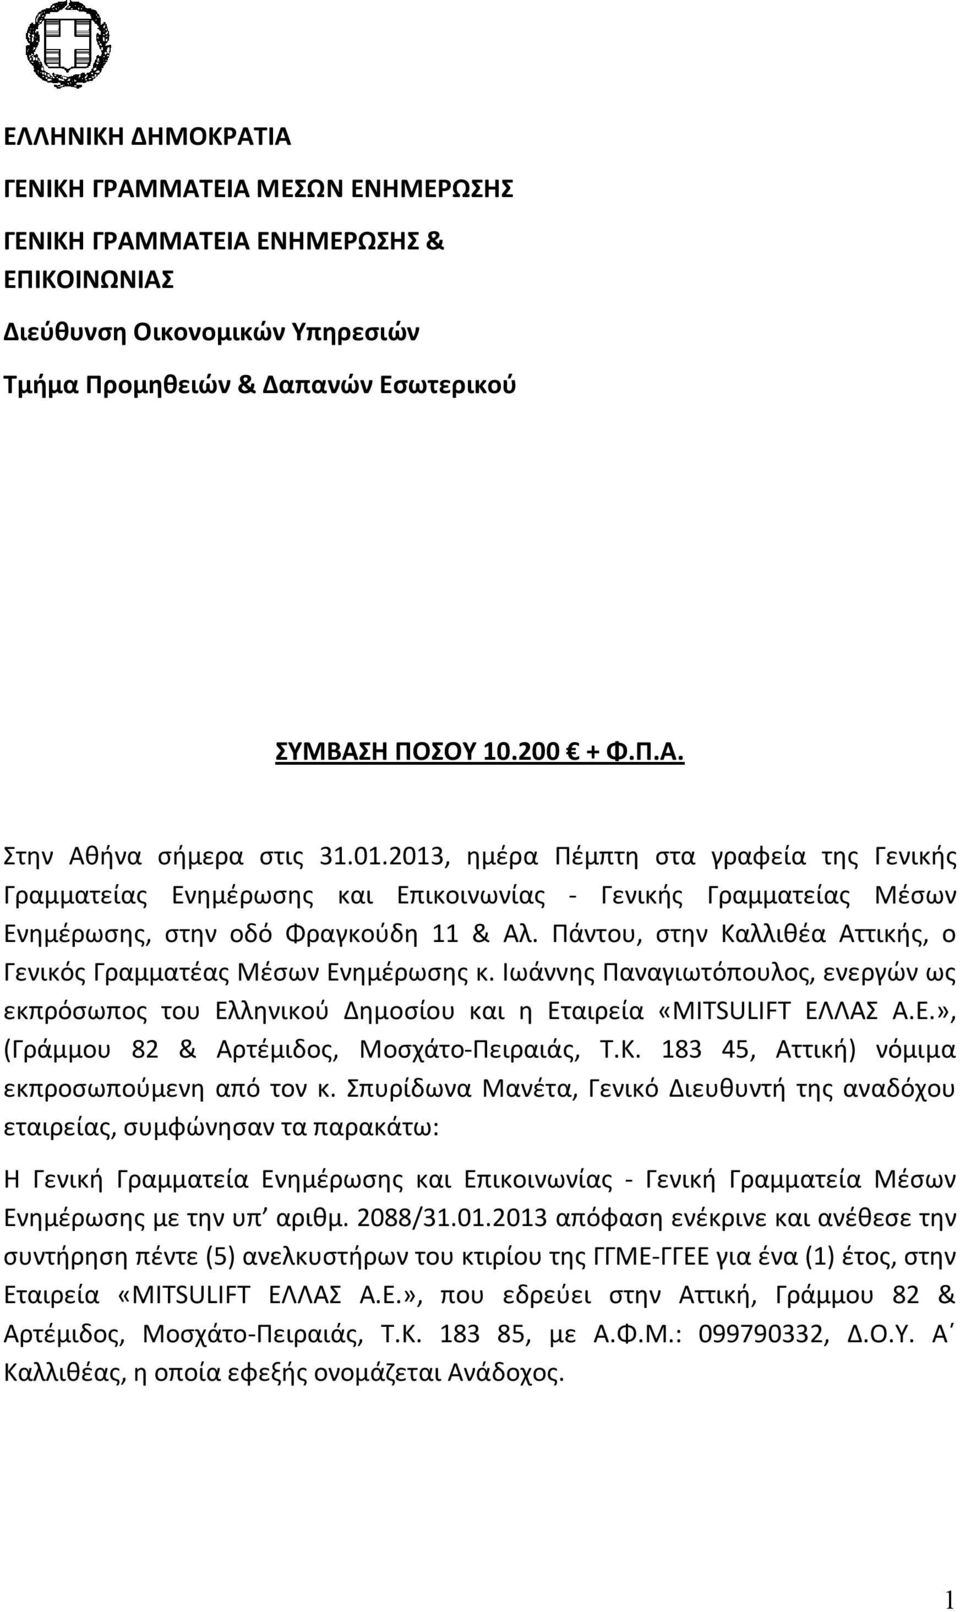 Πάντου, στην Καλλιθέα Αττικής, ο Γενικός Γραμματέας Μέσων Ενημέρωσης κ. Ιωάννης Παναγιωτόπουλος, ενεργών ως εκπρόσωπος του Ελληνικού Δημοσίου και η Εταιρεία «MITSULIFT ΕΛΛΑΣ Α.Ε.», (Γράμμου 82 & Αρτέμιδος, Μοσχάτο-Πειραιάς, Τ.